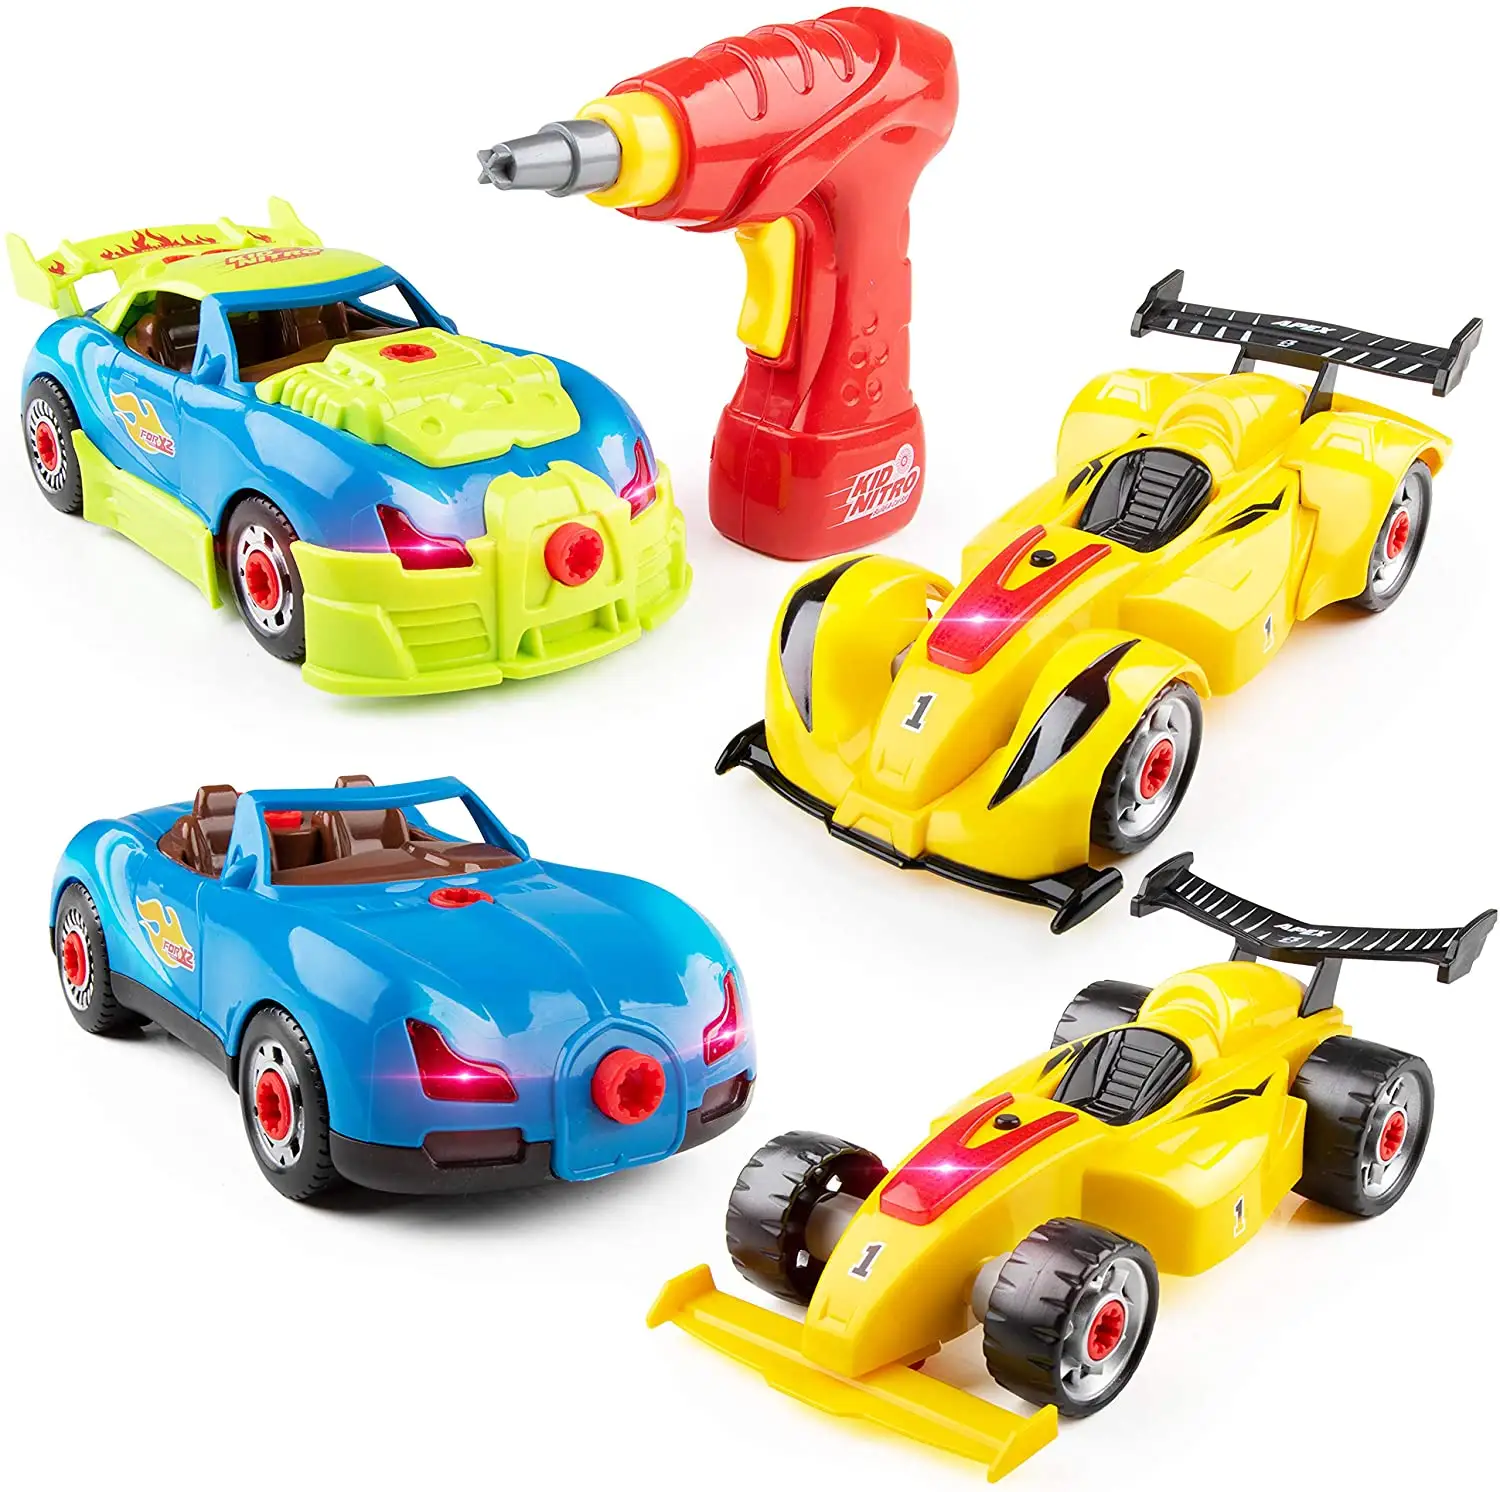 Separar coche de carreras juguetes construir tu propio juguete coche con 30 piezas construcciones juguete de coche con motor de sonidos y luces